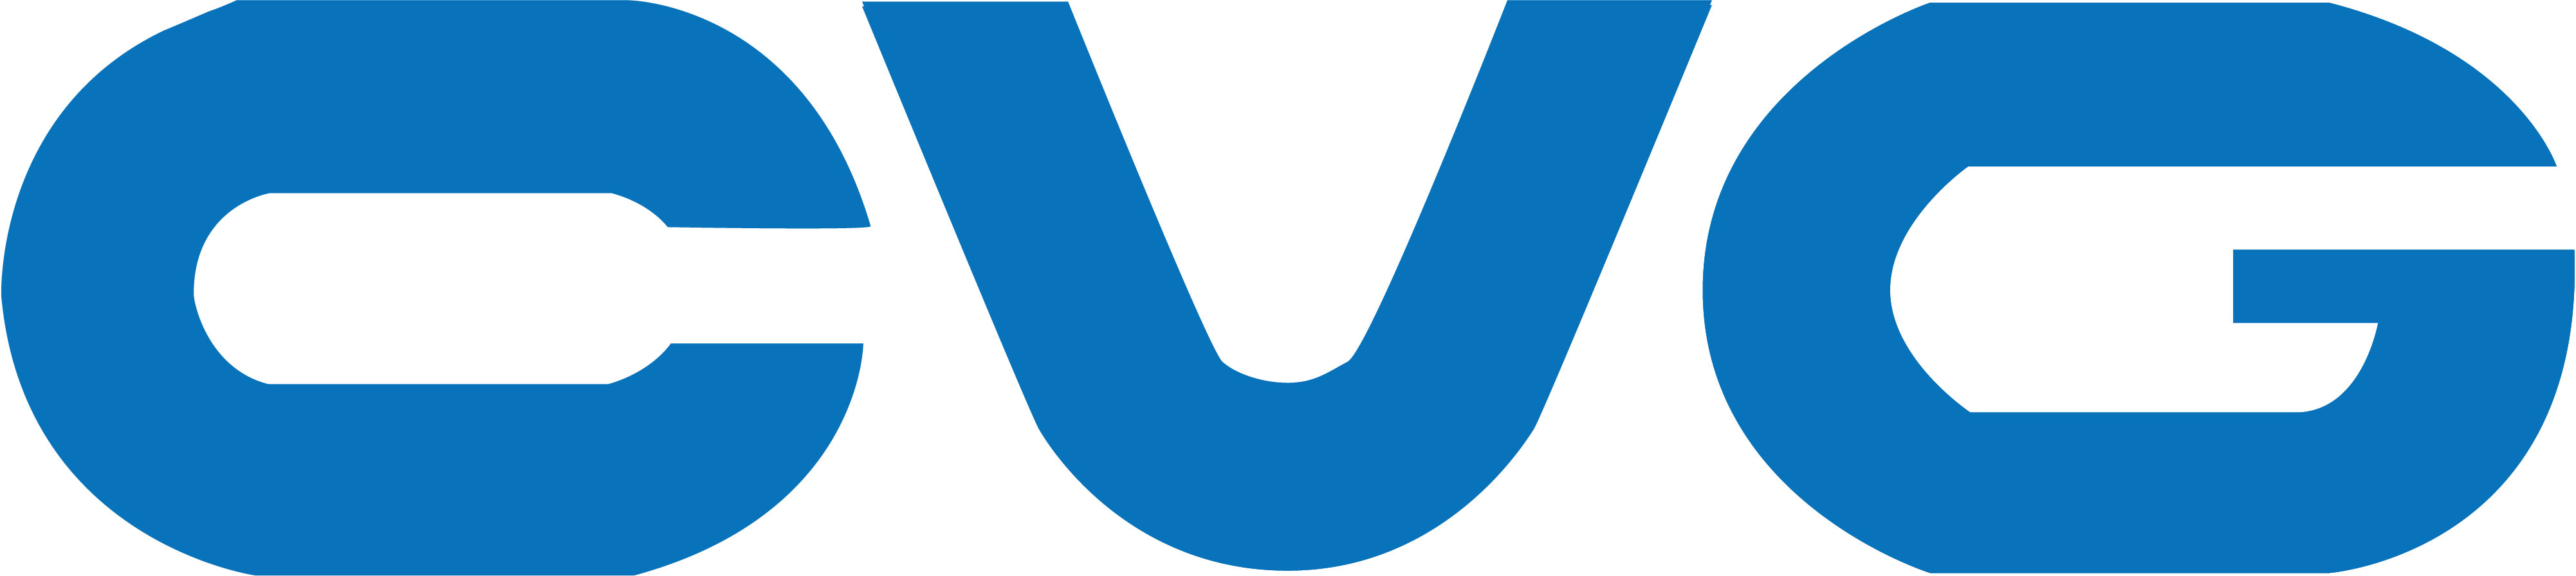 2020 CVG Logo.jpg